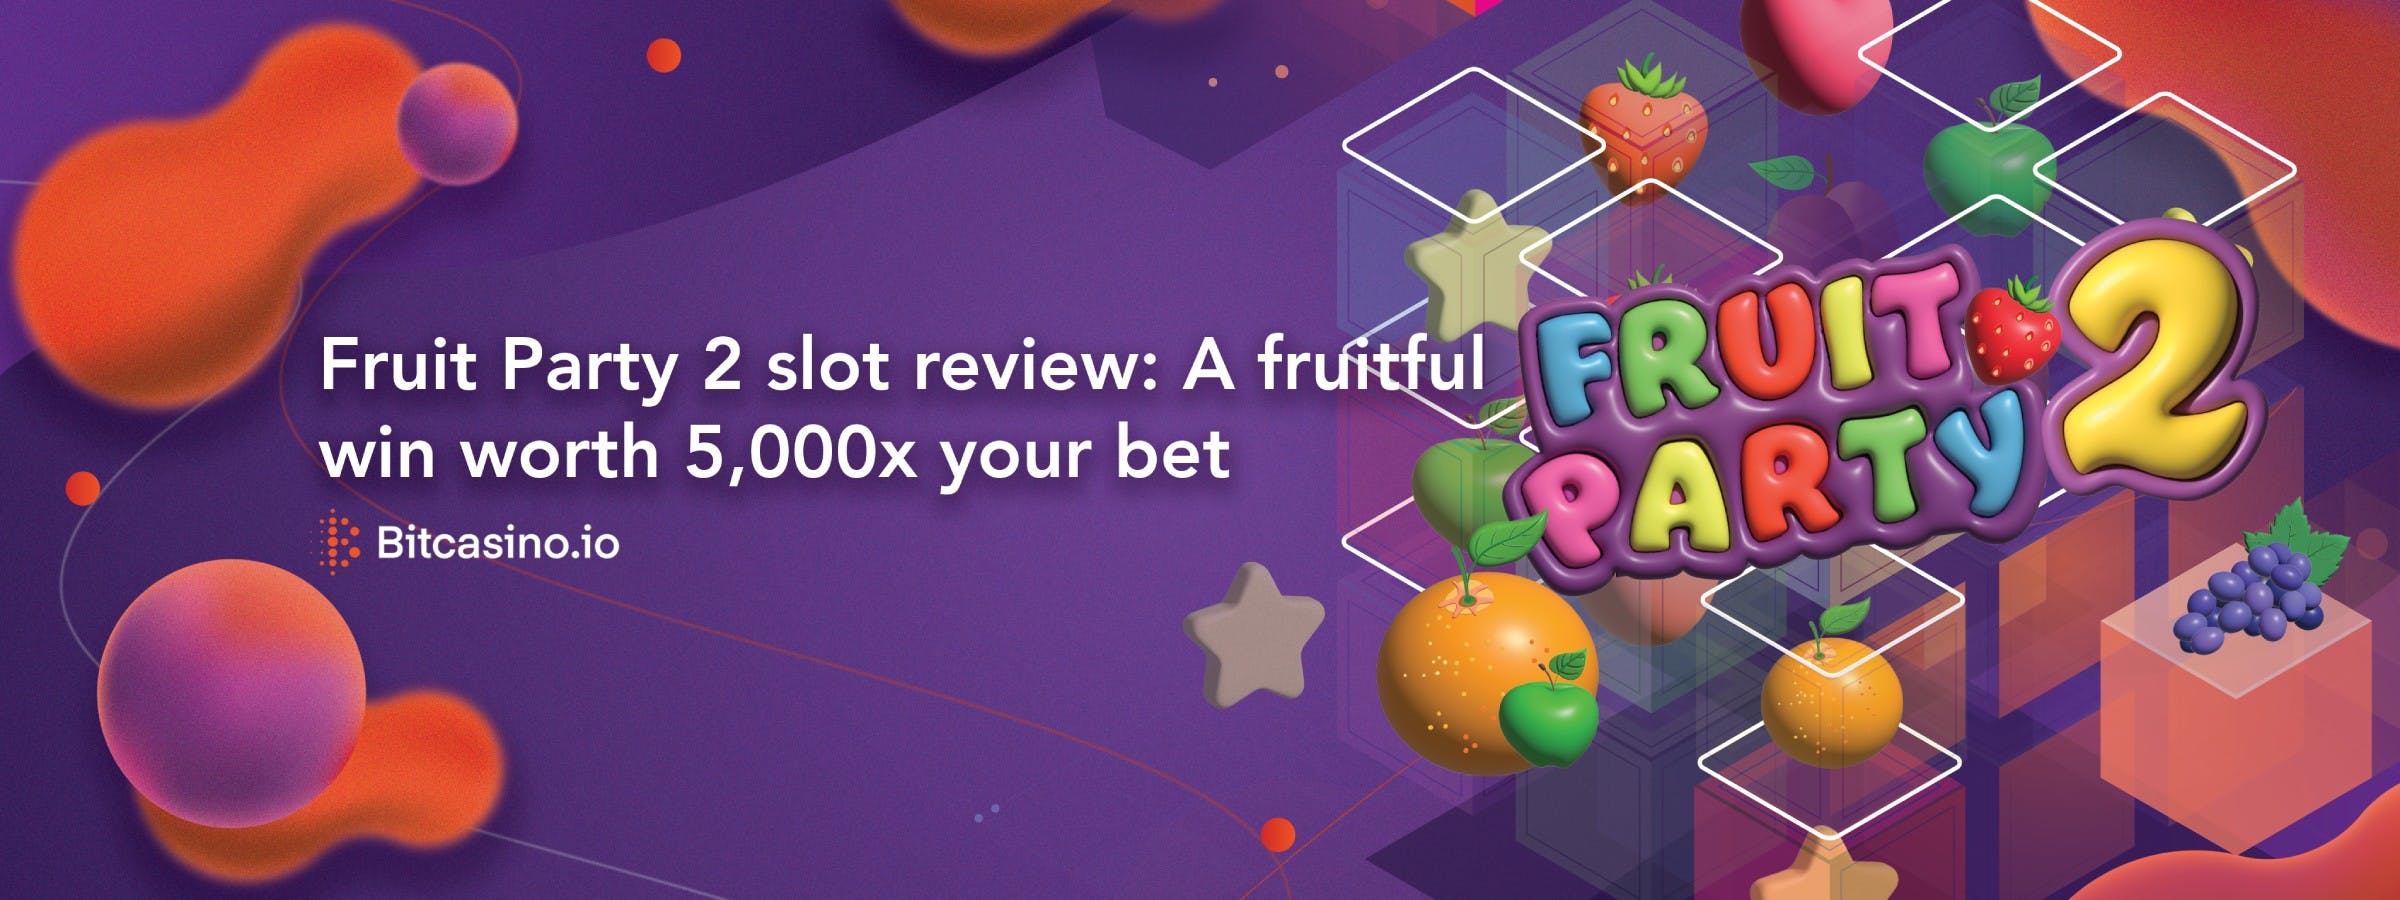 Fruit Party 2 (フルーツパーティー2)スロットレビュー： ベット額の5,000倍相当の果実のような勝利